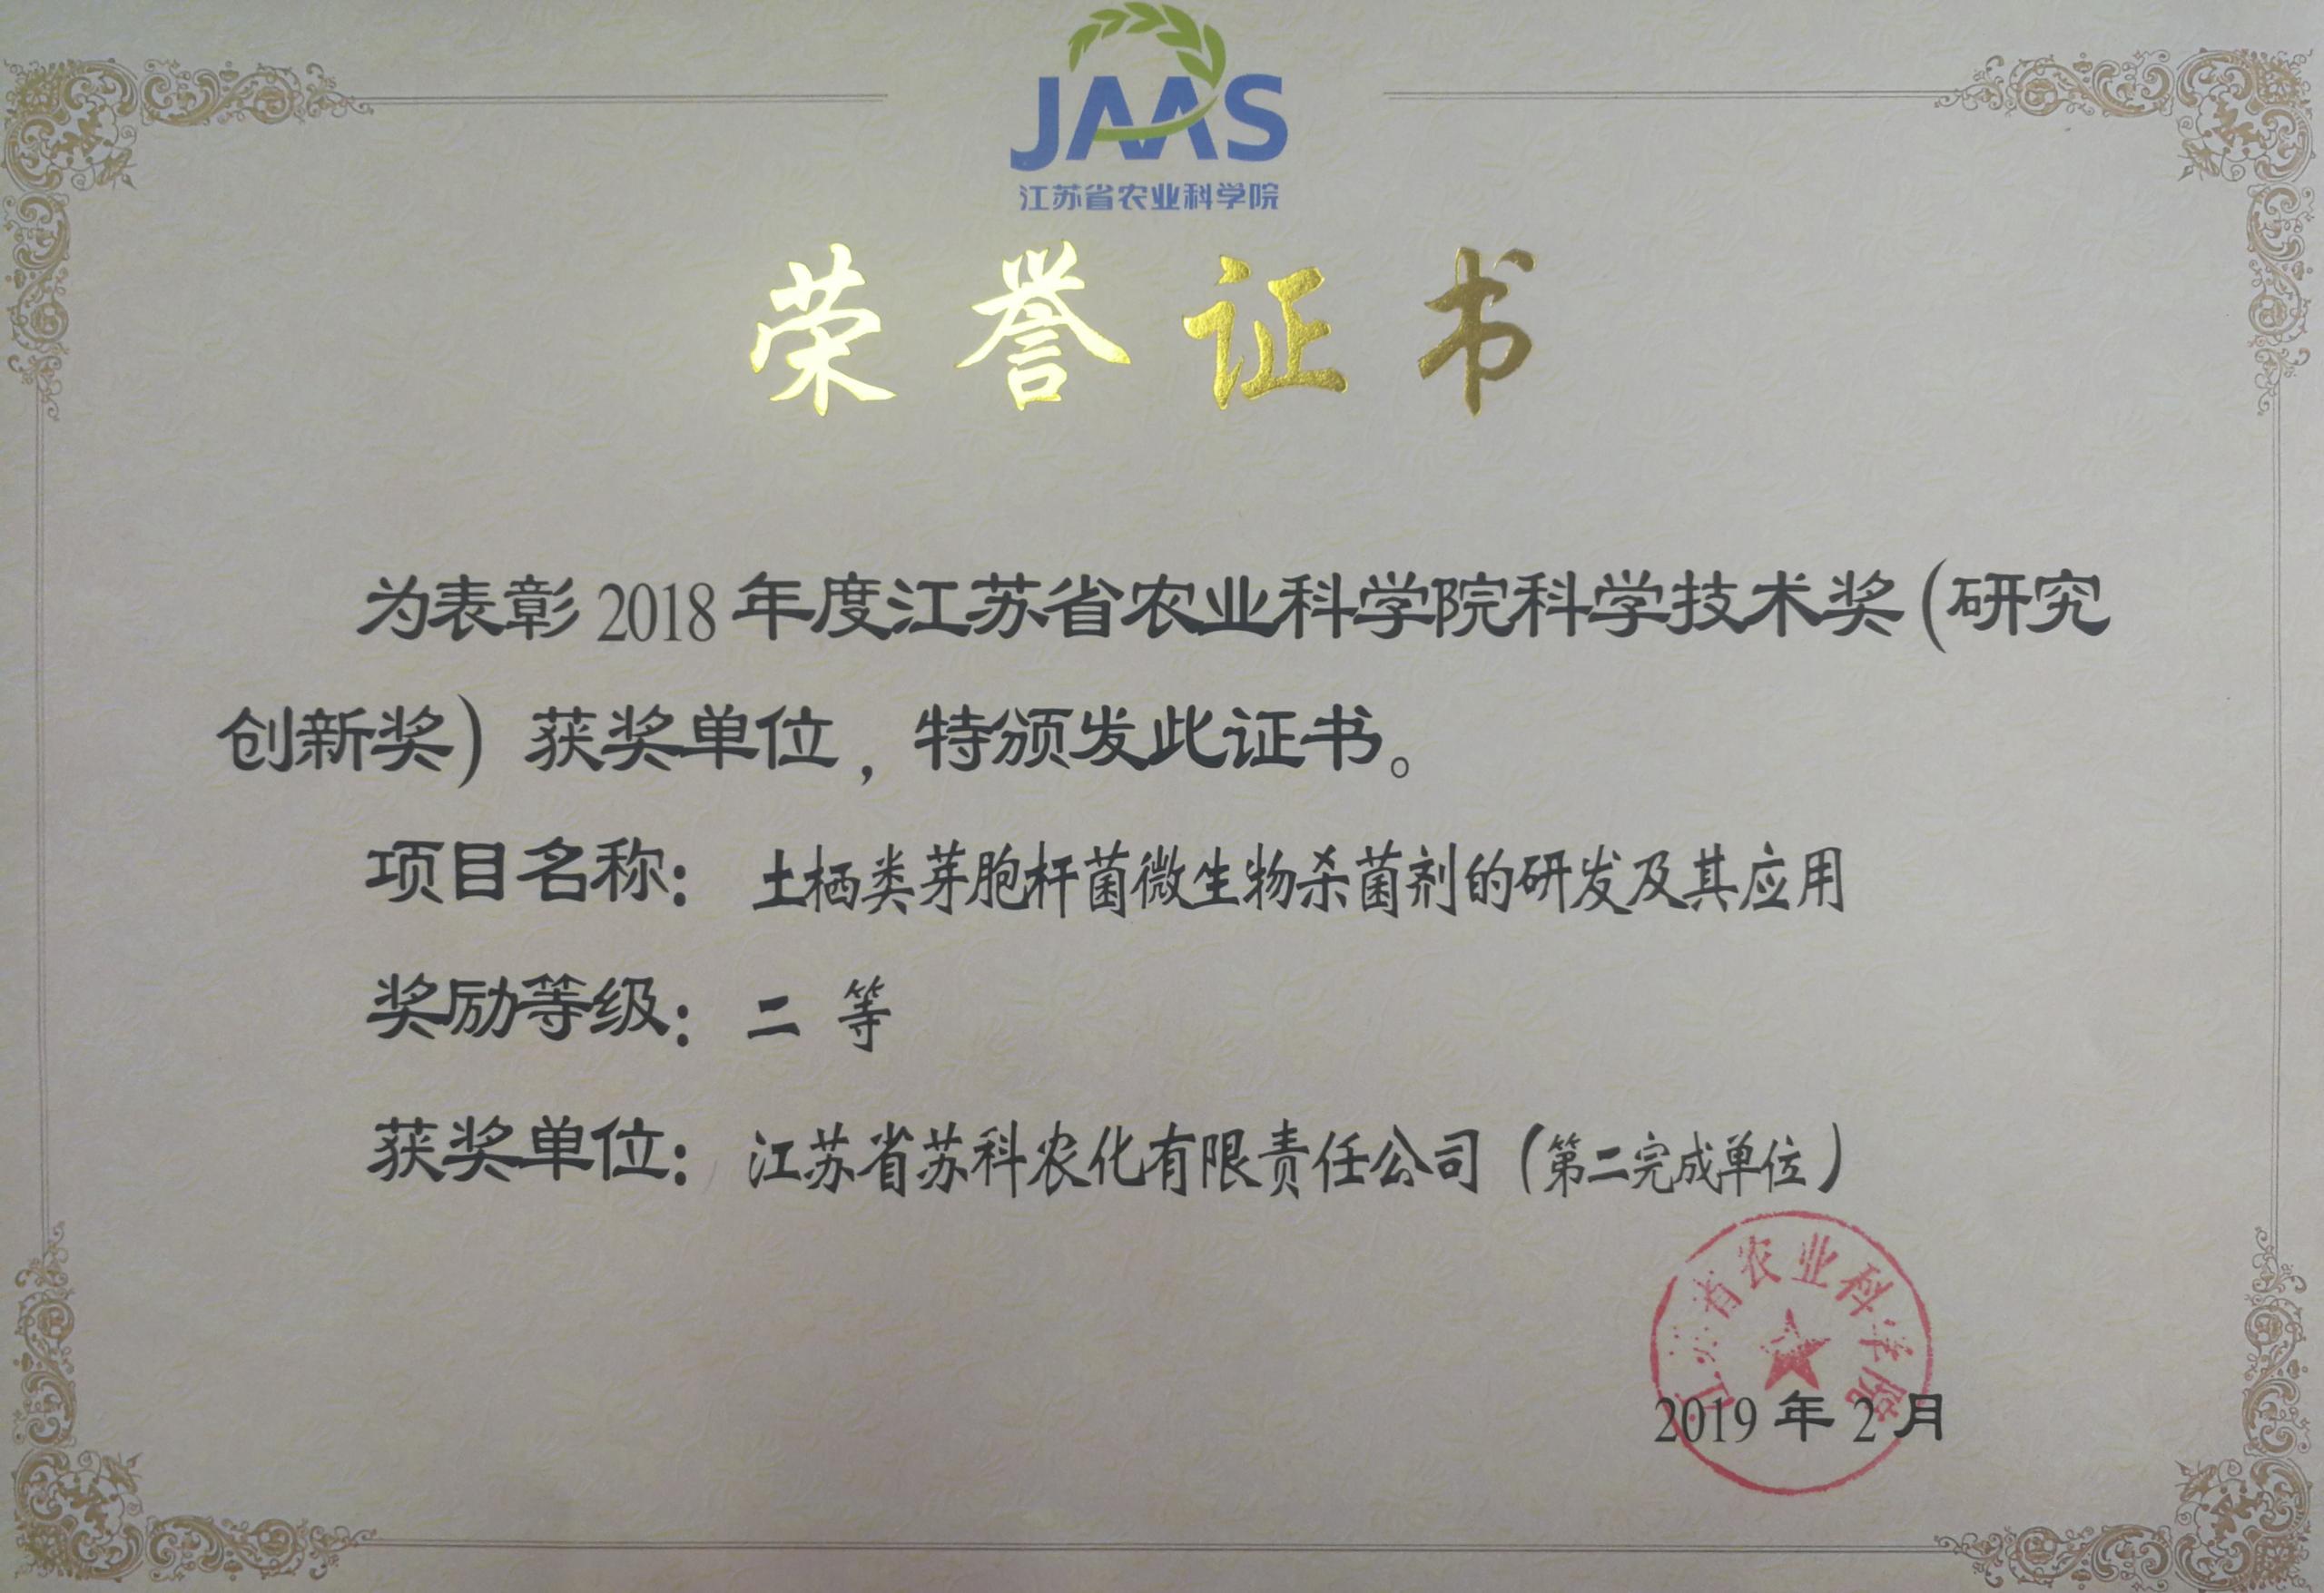 皇冠crown官网荣获院科学技术二等奖